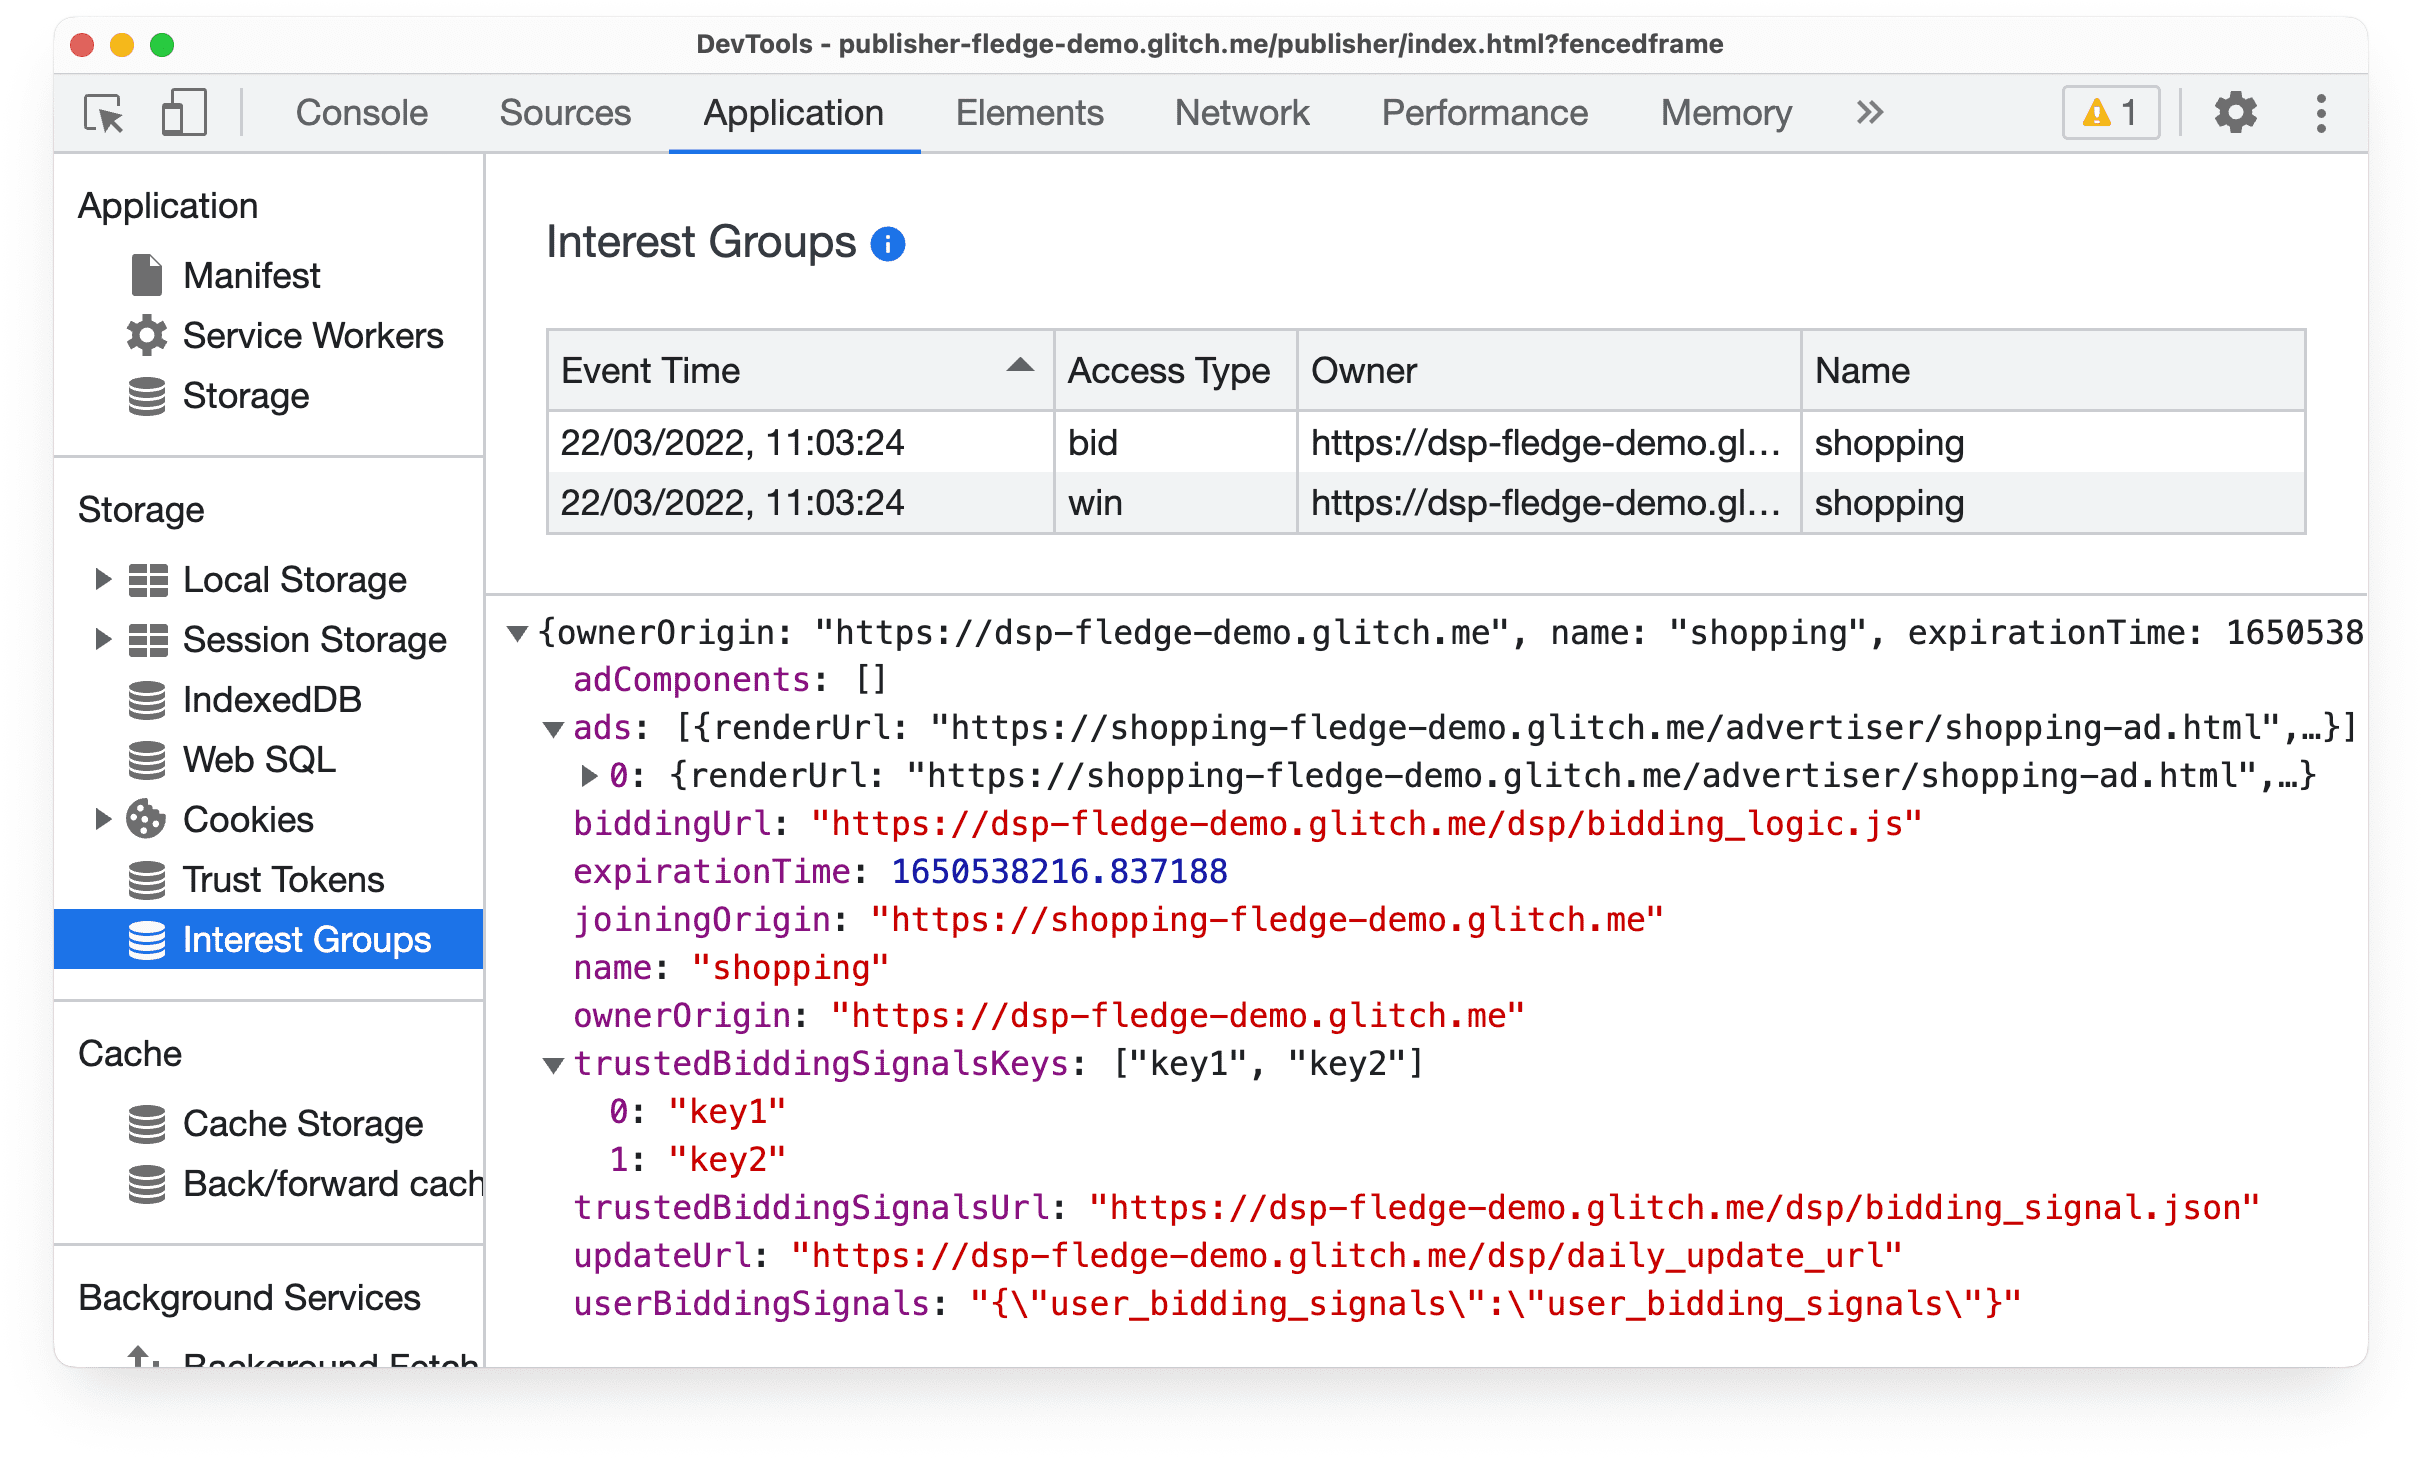 Chrome Canary の DevTools の [Application] パネル。Protected Audience API のオークション入札と落札イベントに関する情報が表示されている。